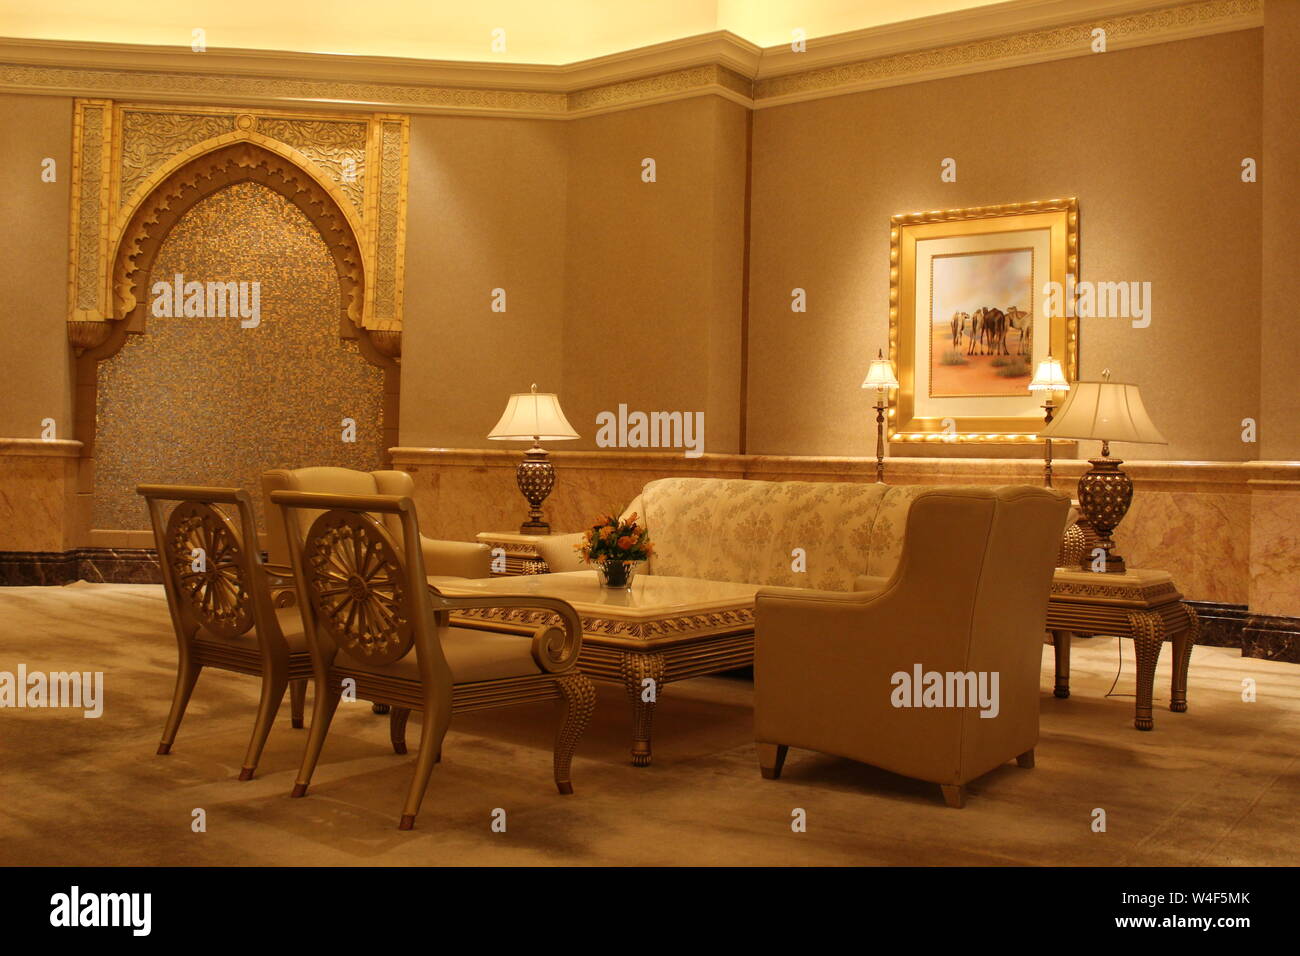 Decorations and Furniture Inside Emirates Palace, Abu Dhabi, UAE Stock Photo